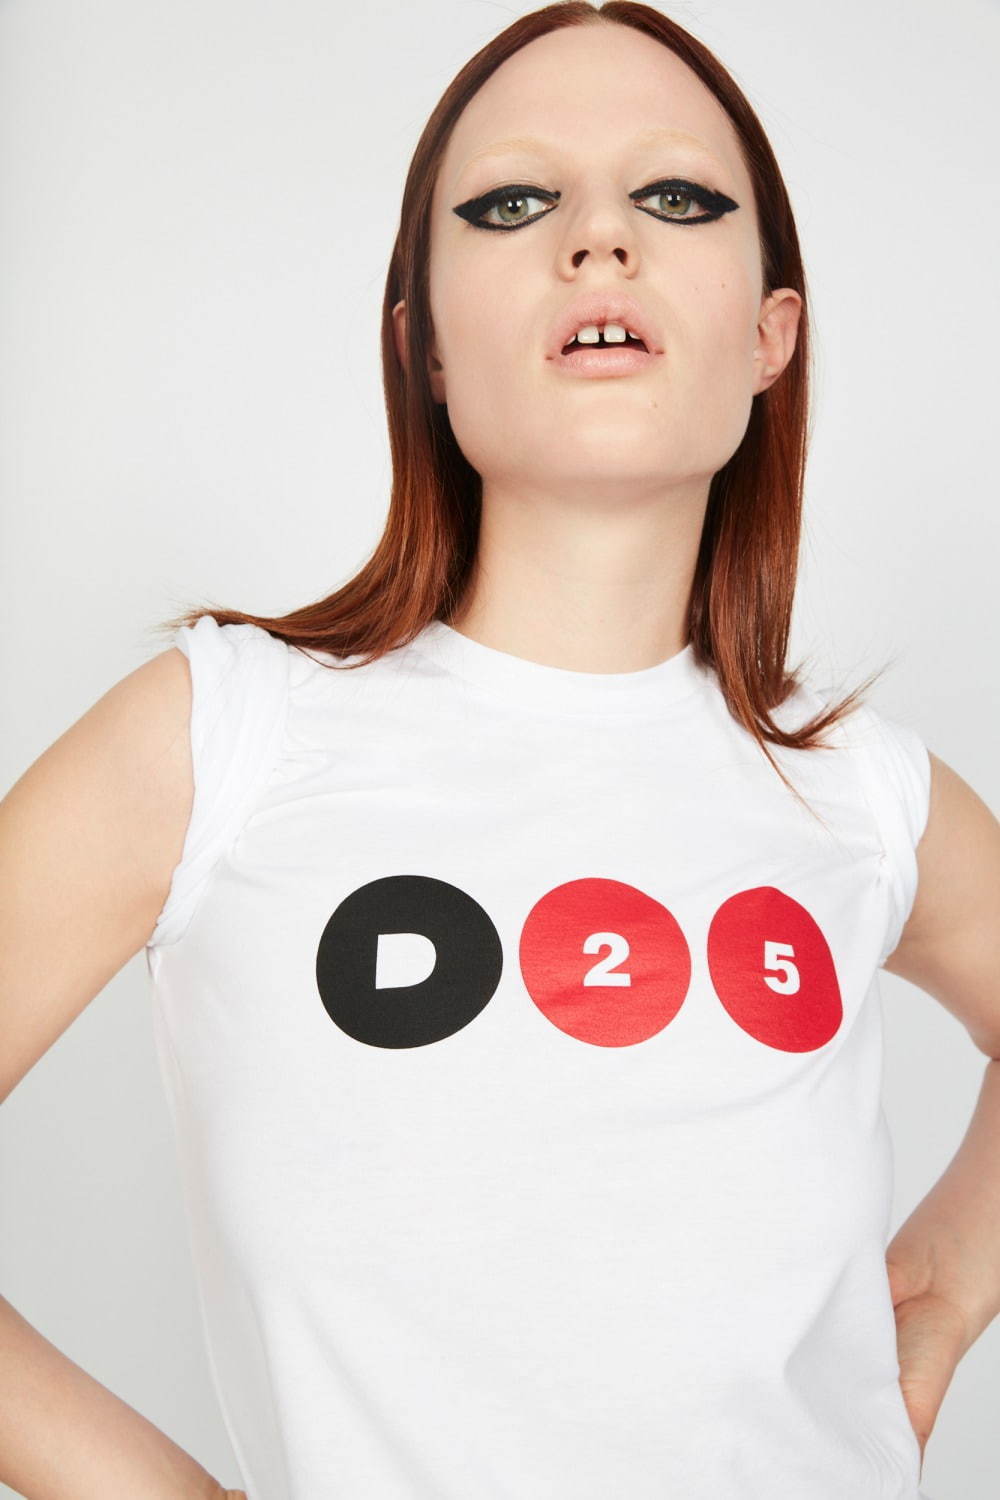 ディースクエアード「D25」ロゴの25周年カプセルコレクション、90年代レトロスポーツ着想